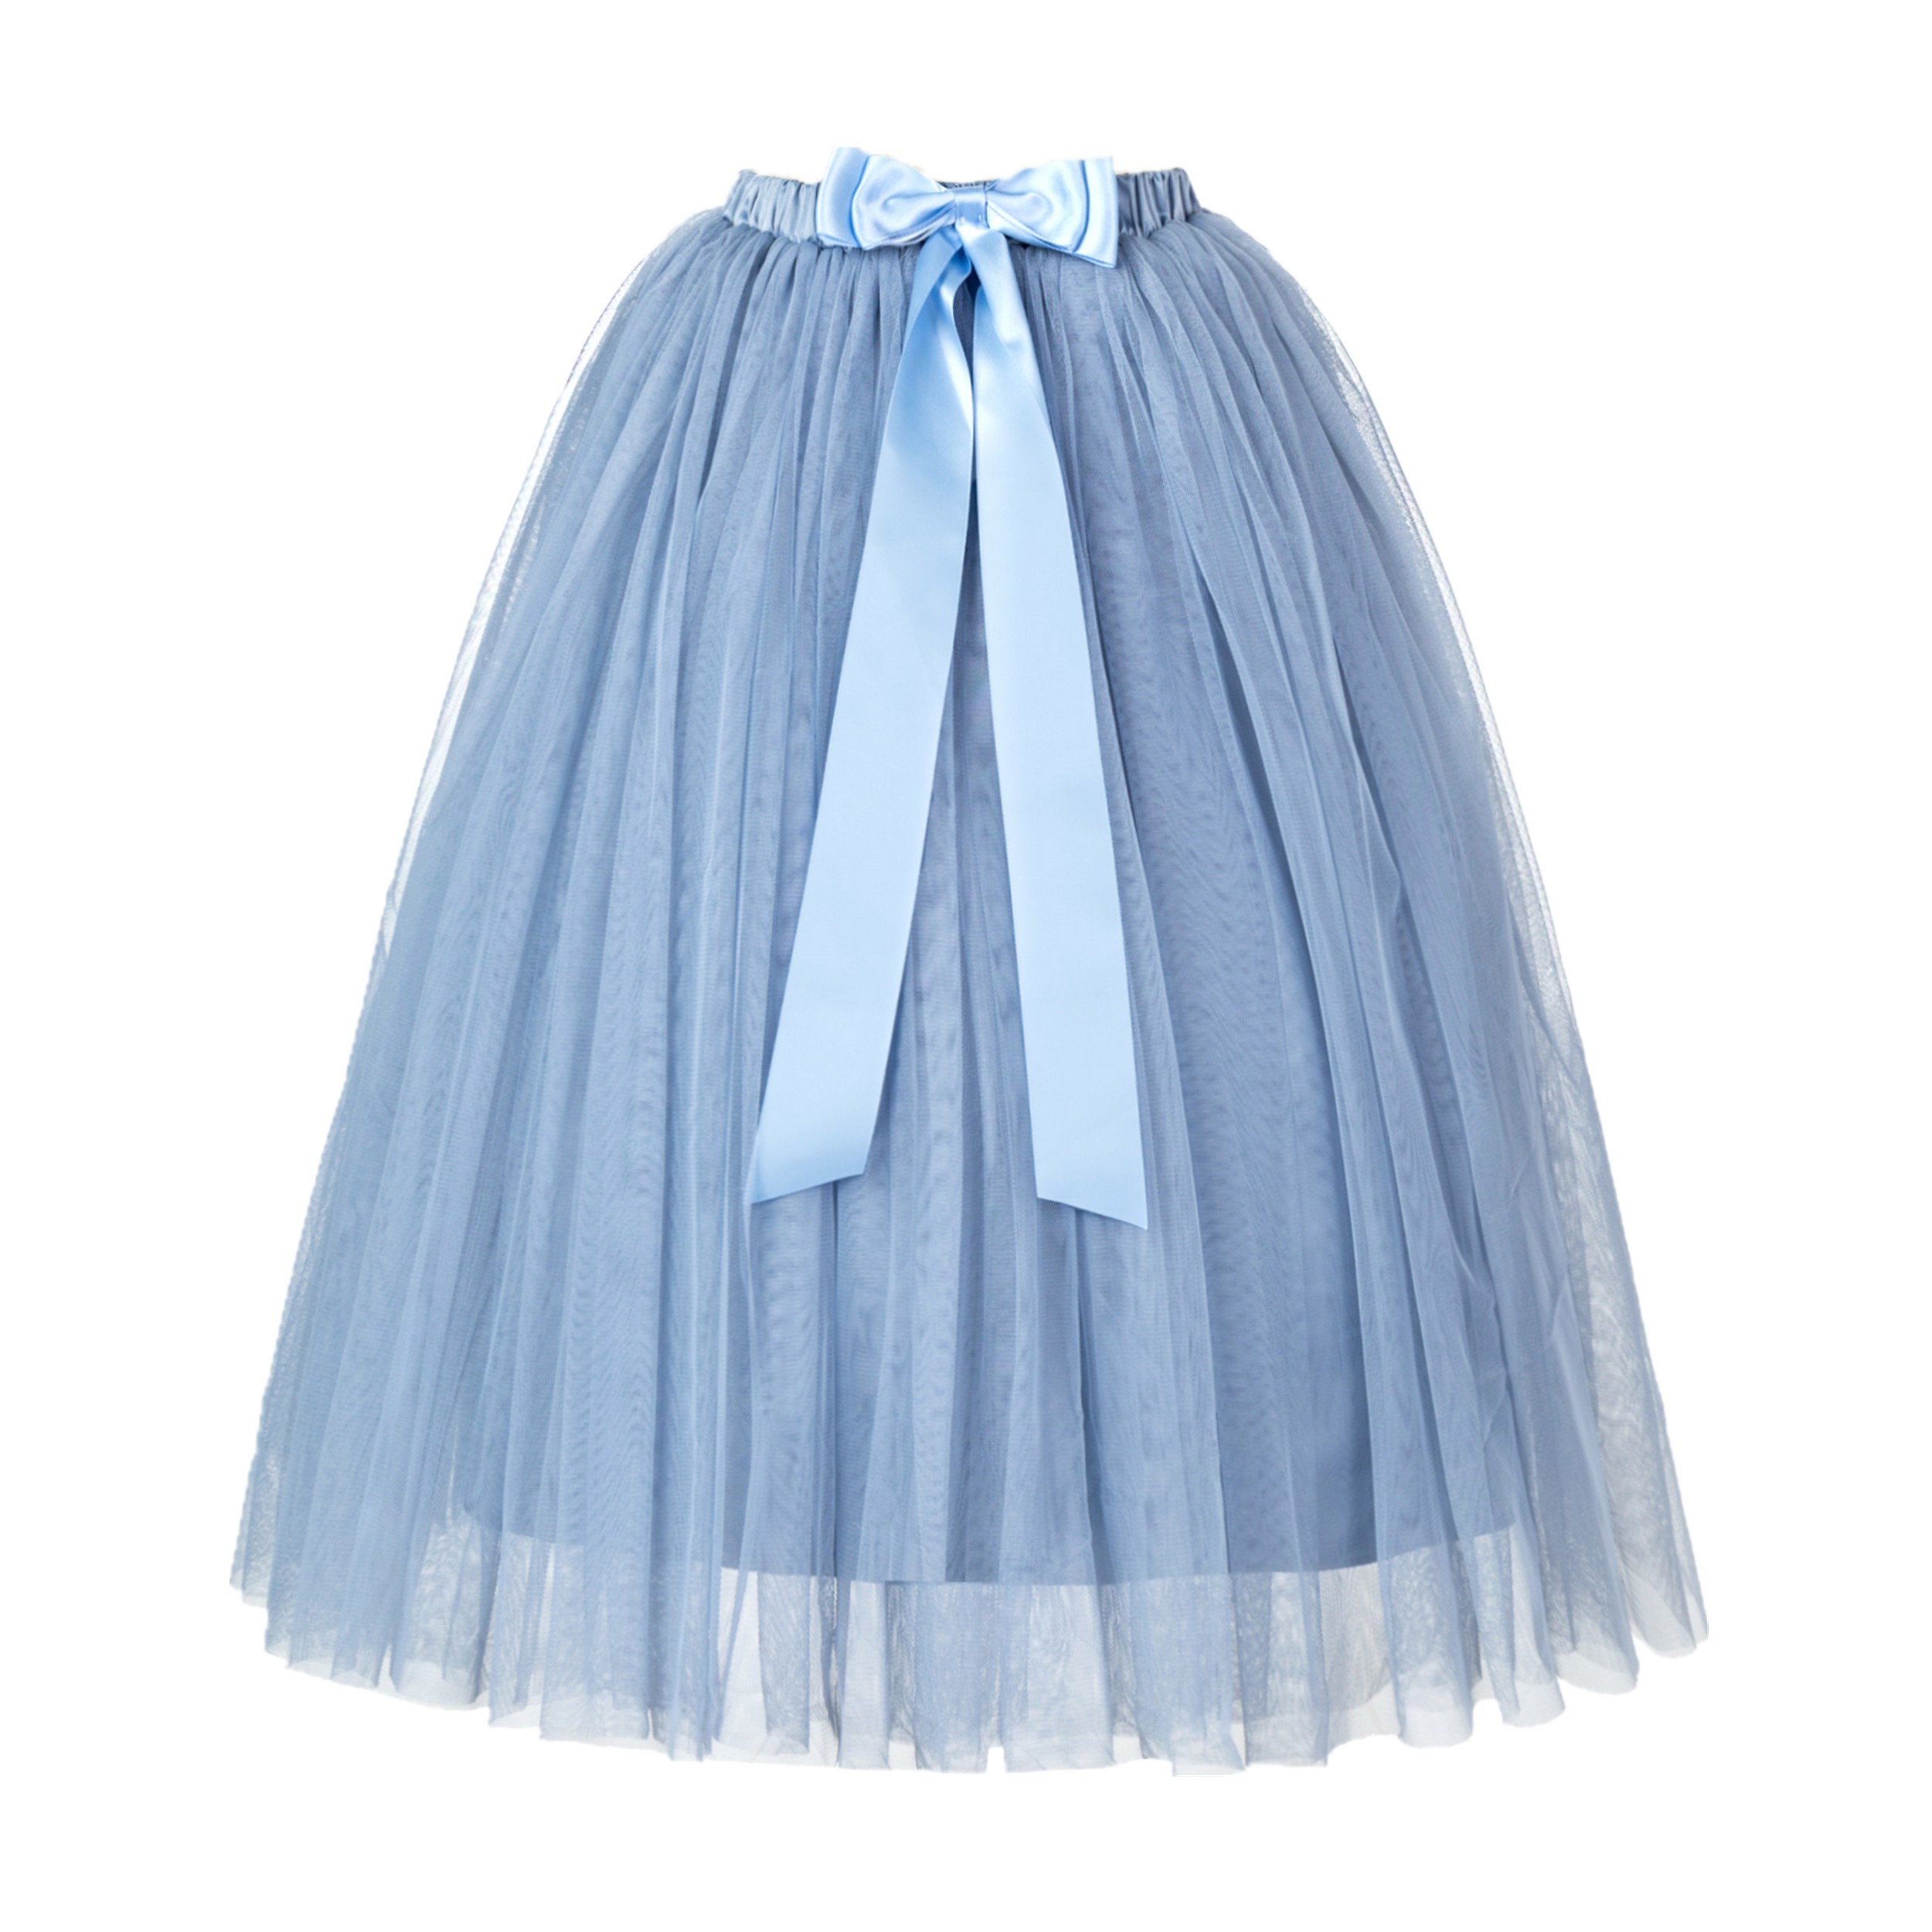 Dusty Blue Flower Girls Tulle Skirt Tutu Skirt Tulle Maxi Skirts